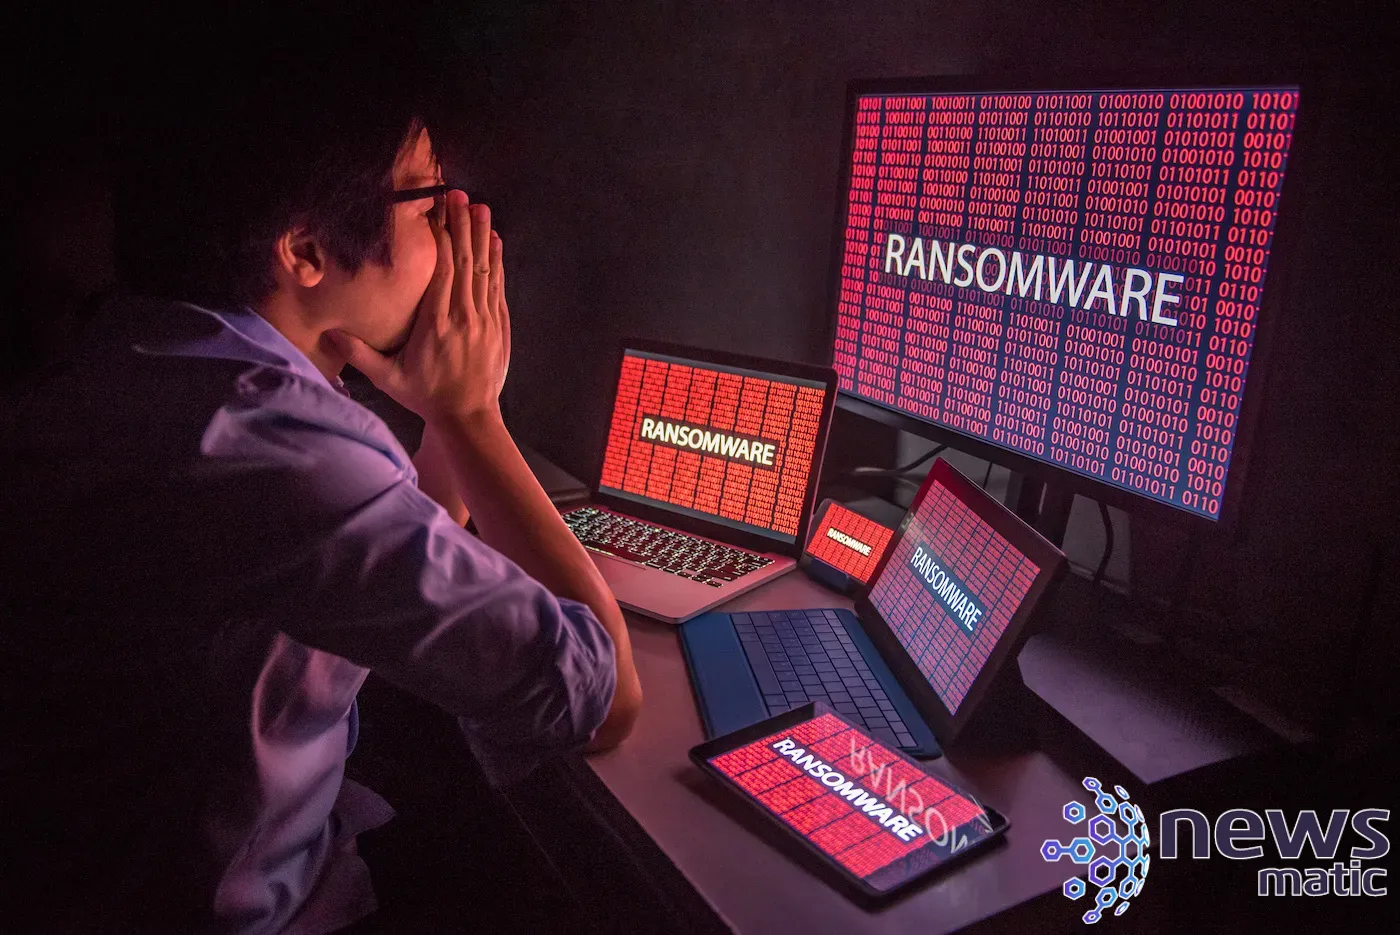 Los 7 aspectos comunes de los ataques de ransomware y cómo defenderse - Seguridad | Imagen 1 Newsmatic